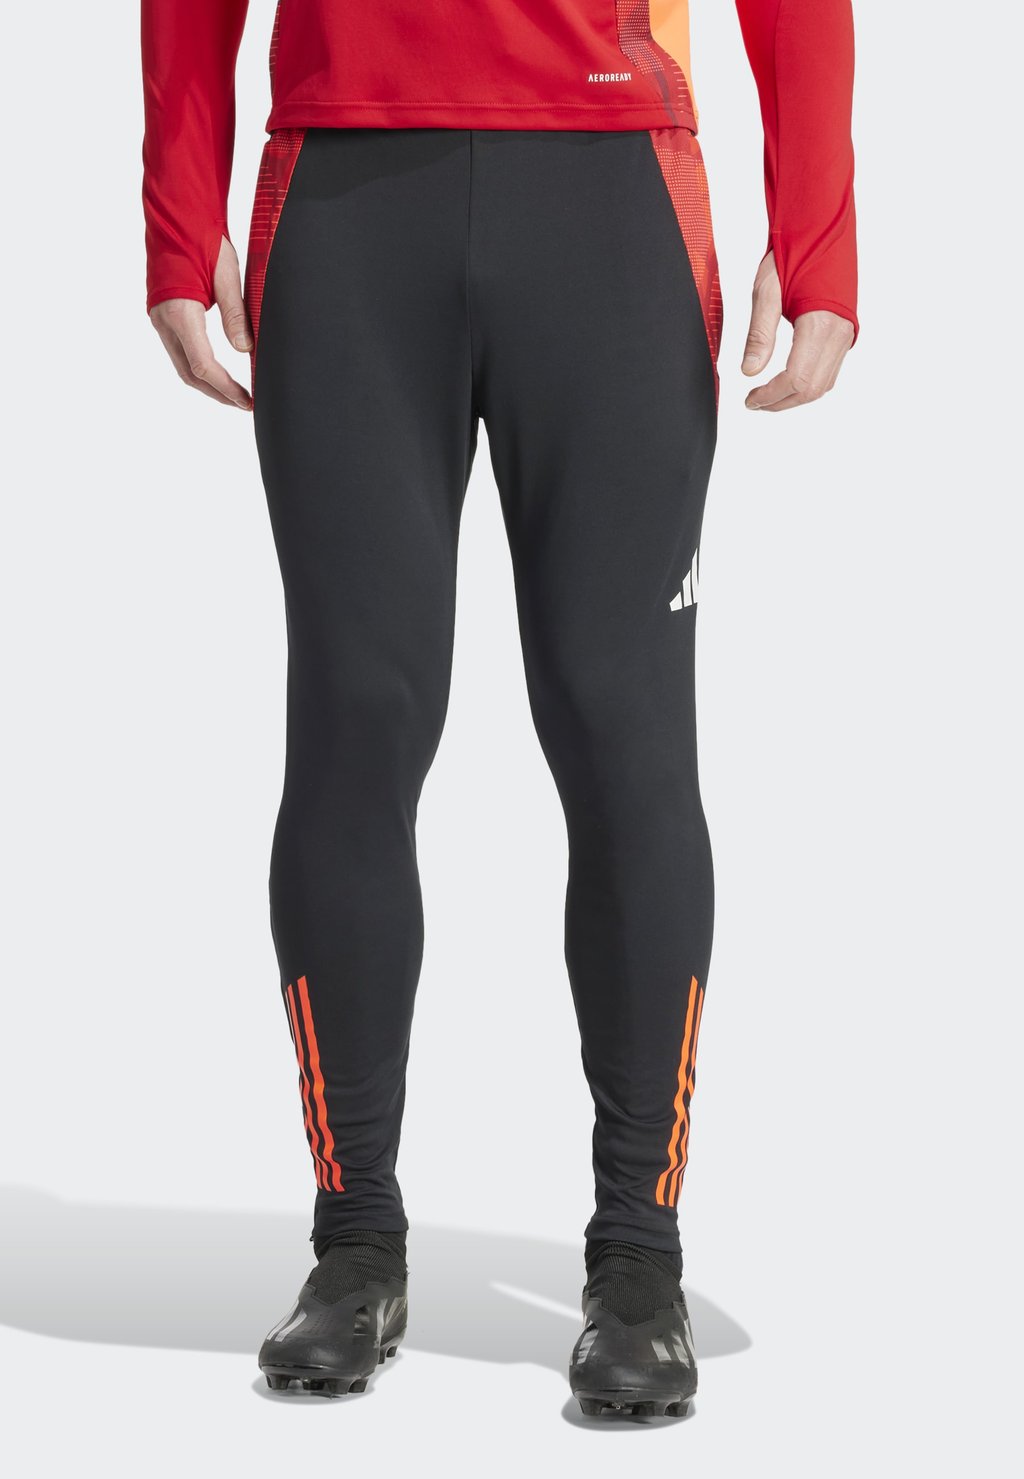 Спортивные брюки Tiro24 Competition Adidas, цвет black app solar red